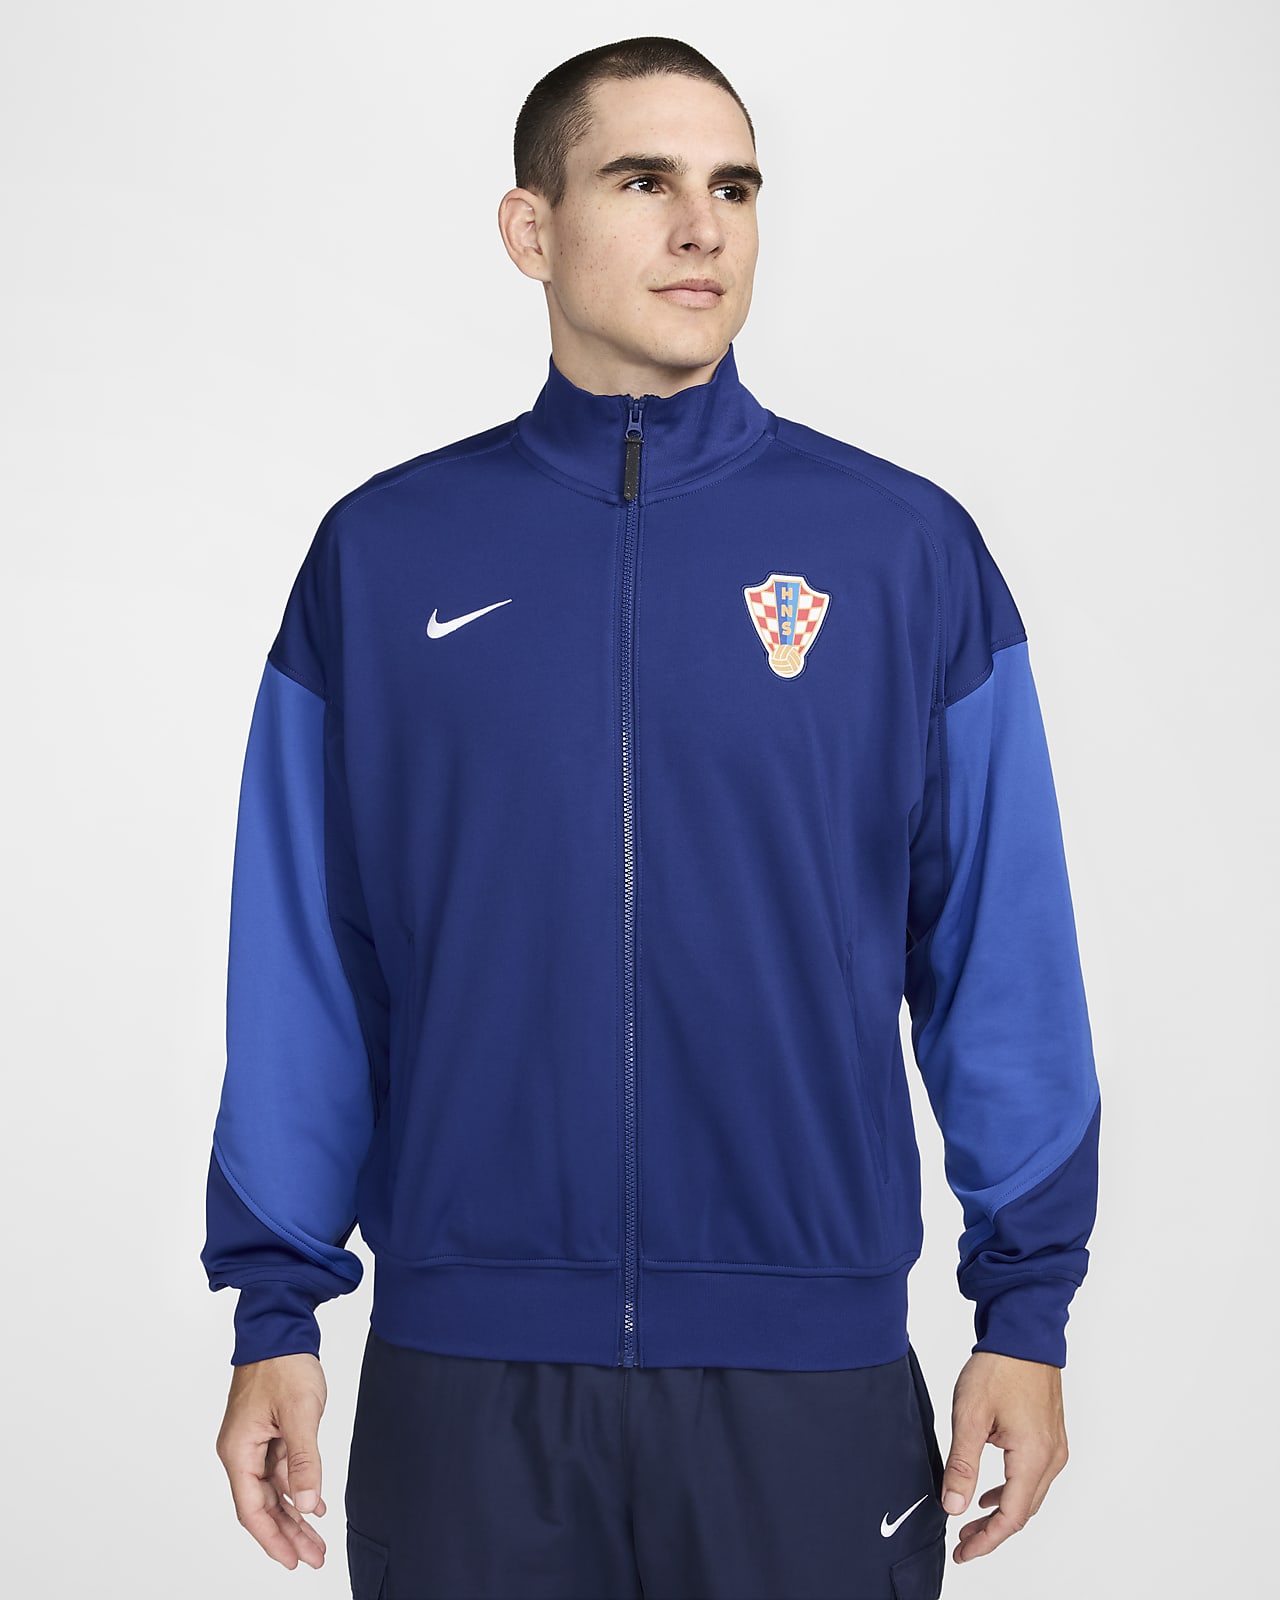 Veste de foot Nike Croatie Academy Pro pour homme